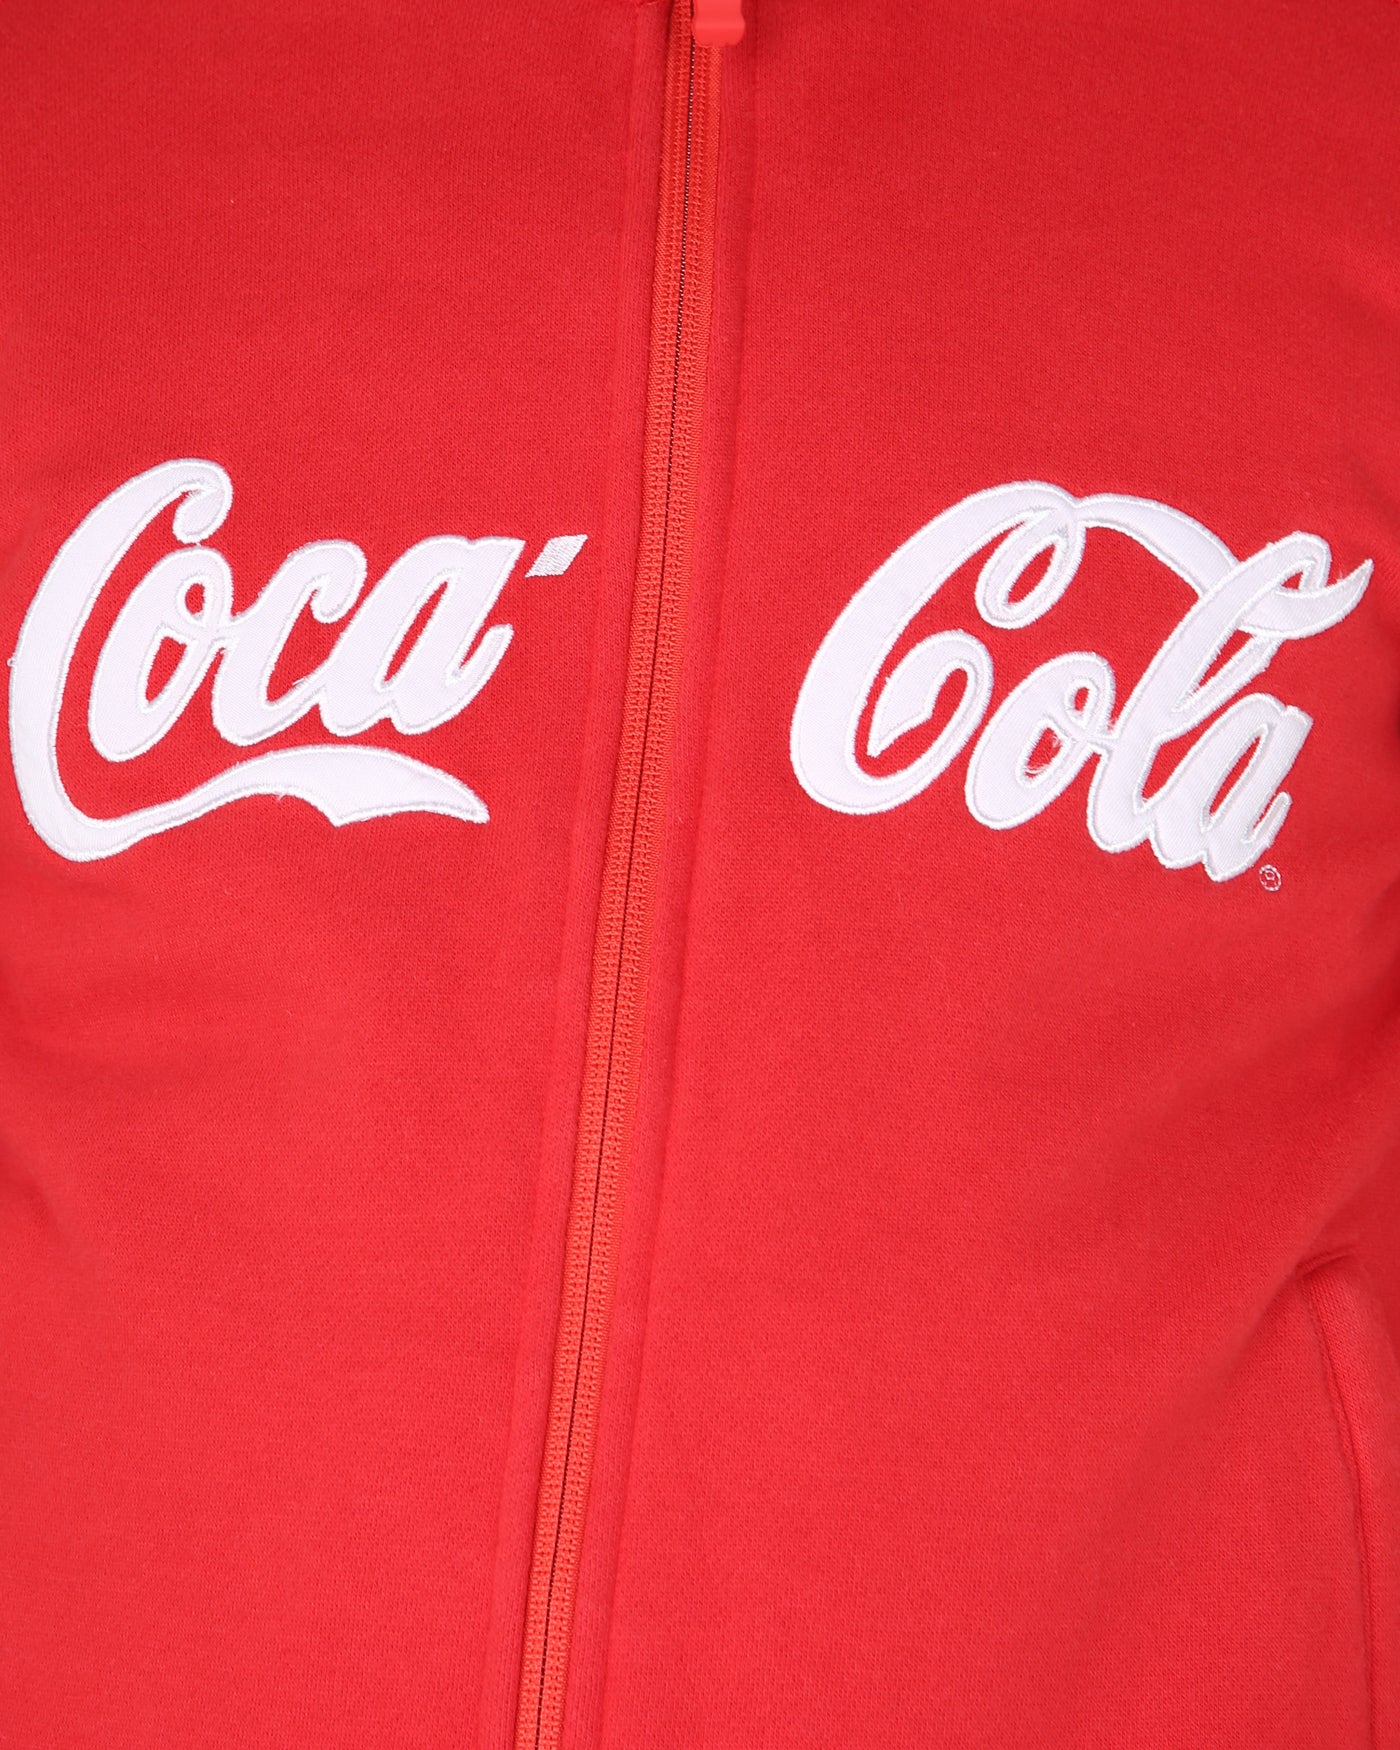 Olympics vancouver 2010 Coca cola red zip-up sweatshirt - xs